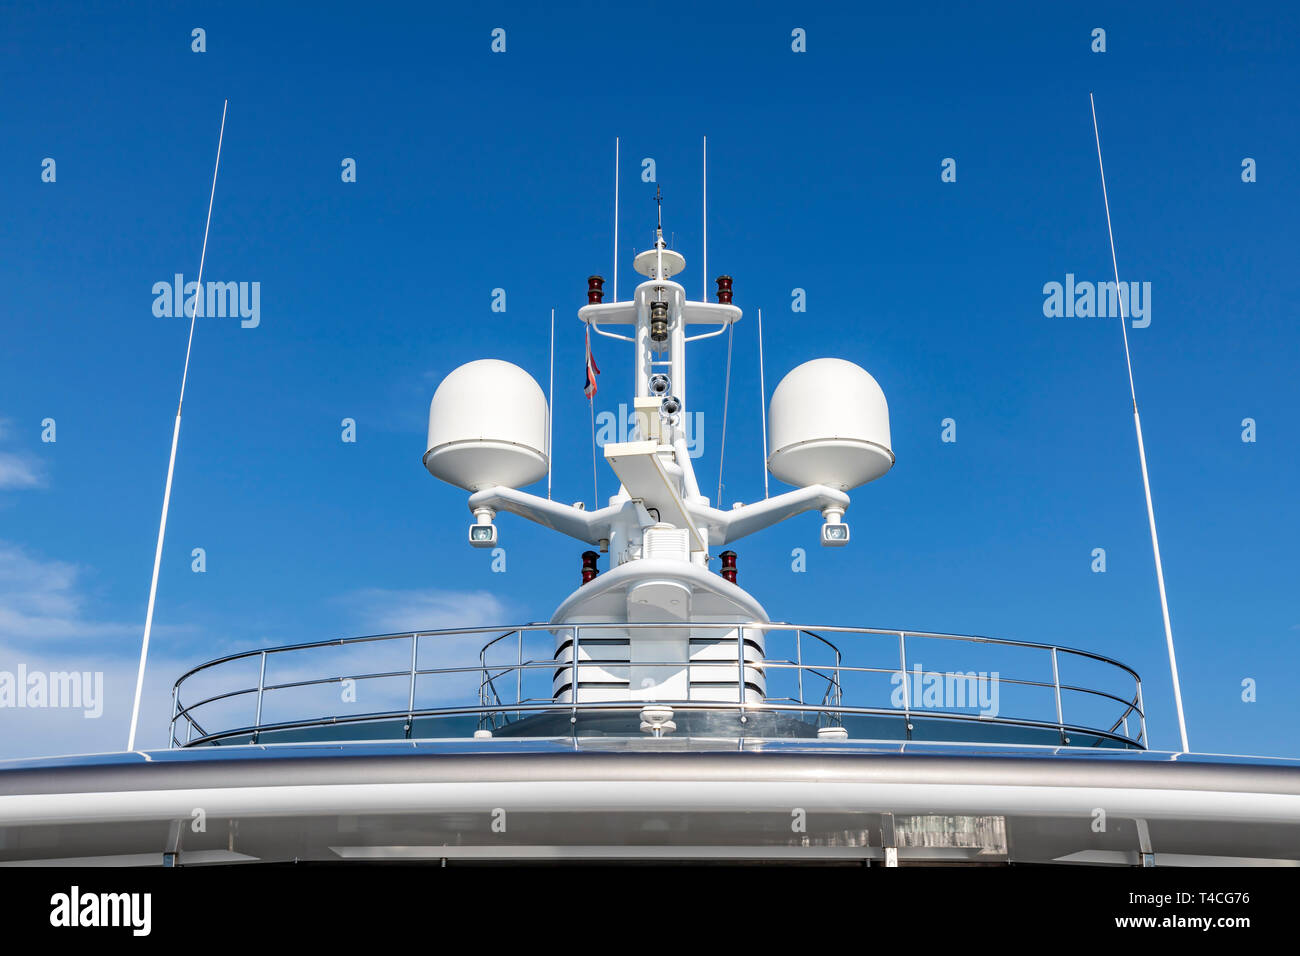 Kommunikation Antennen mit Navigation, Radar, die auf dem oberen Deck des Luxus weiße Kreuzfahrtschiff. Es ist eine thailändische Fahne mit klaren blauen Himmel Ich Stockfoto